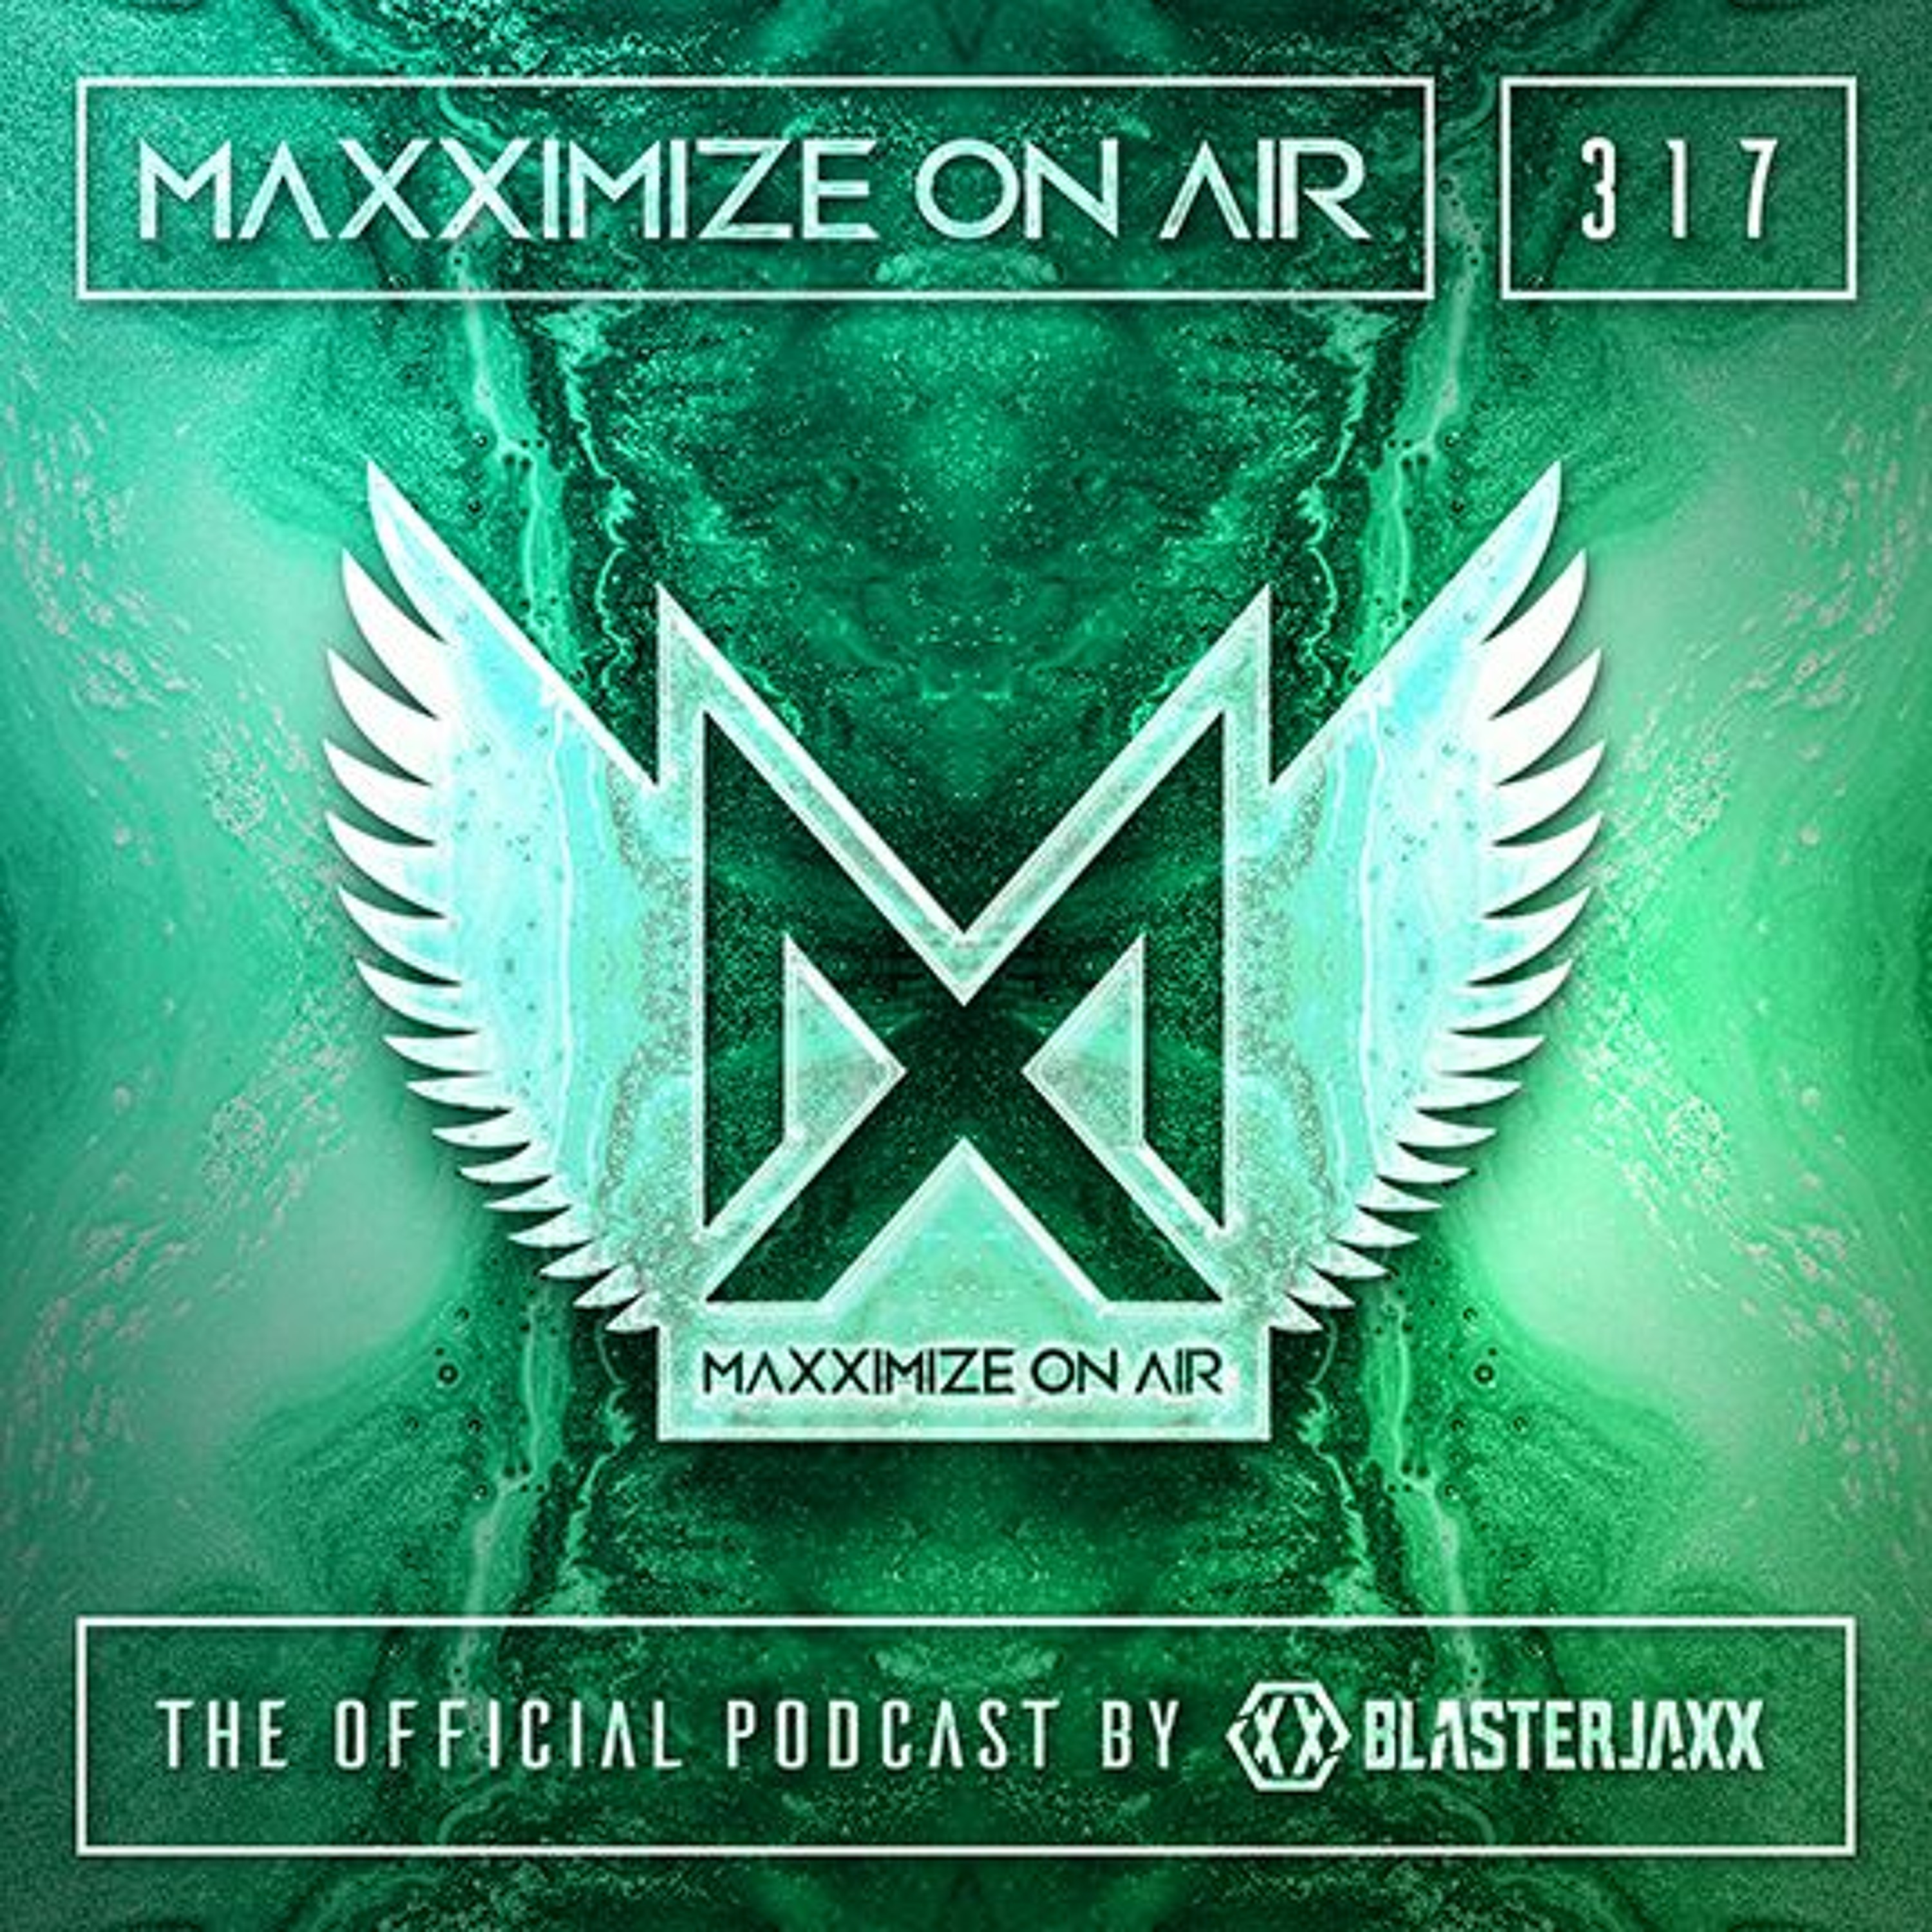 Blasterjaxx present Maxximize On Air #317